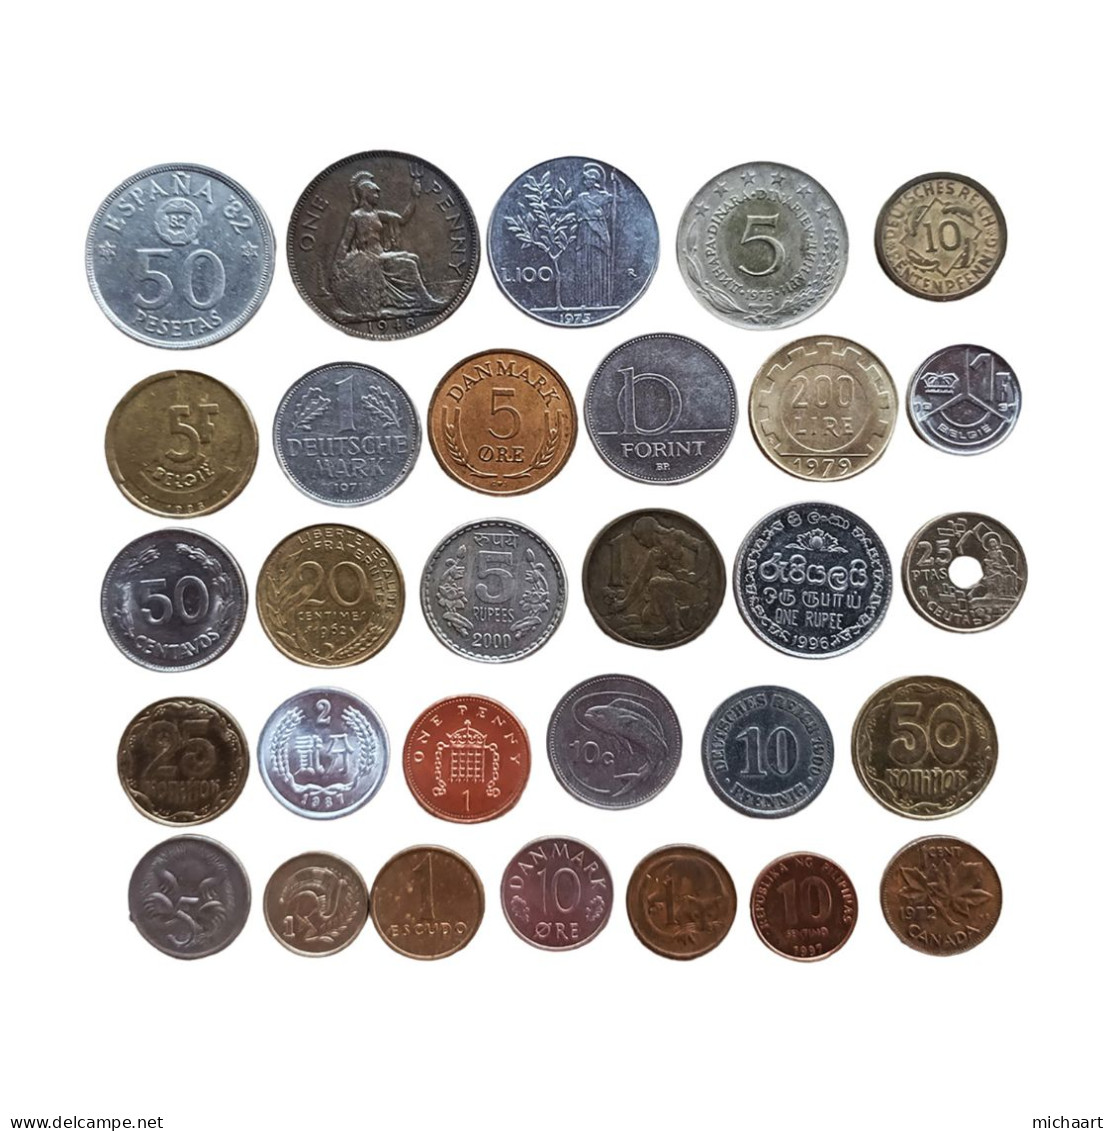 Coins Of The World 30 Coins Lot Mix Foreign Variety & Quality 02811 - Sammlungen & Sammellose